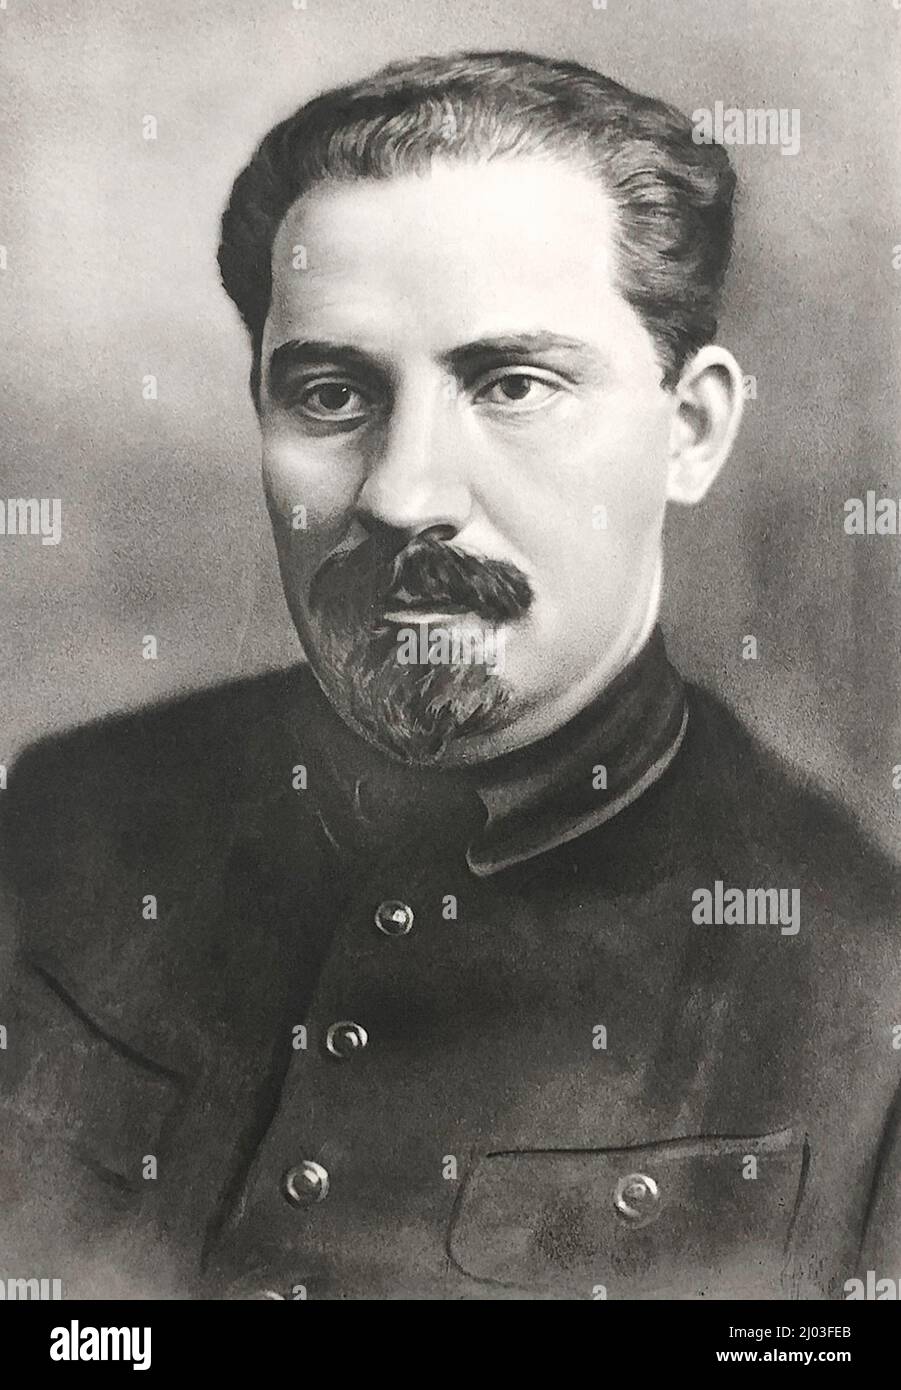 Lazar Moissejewitsch Kaganowitsch, ebenfalls Kahanowitsch (1893 – 1991), war ein sowjetischer Politiker und Verwalter und einer der Hauptkollegen von Joseph Stalin. Er ist bekannt dafür, Stalin bei der Machtüberstellung zu helfen und für seine harte Behandlung und Hinrichtung jener Drohungen gegen Stalins Regime. Stockfoto